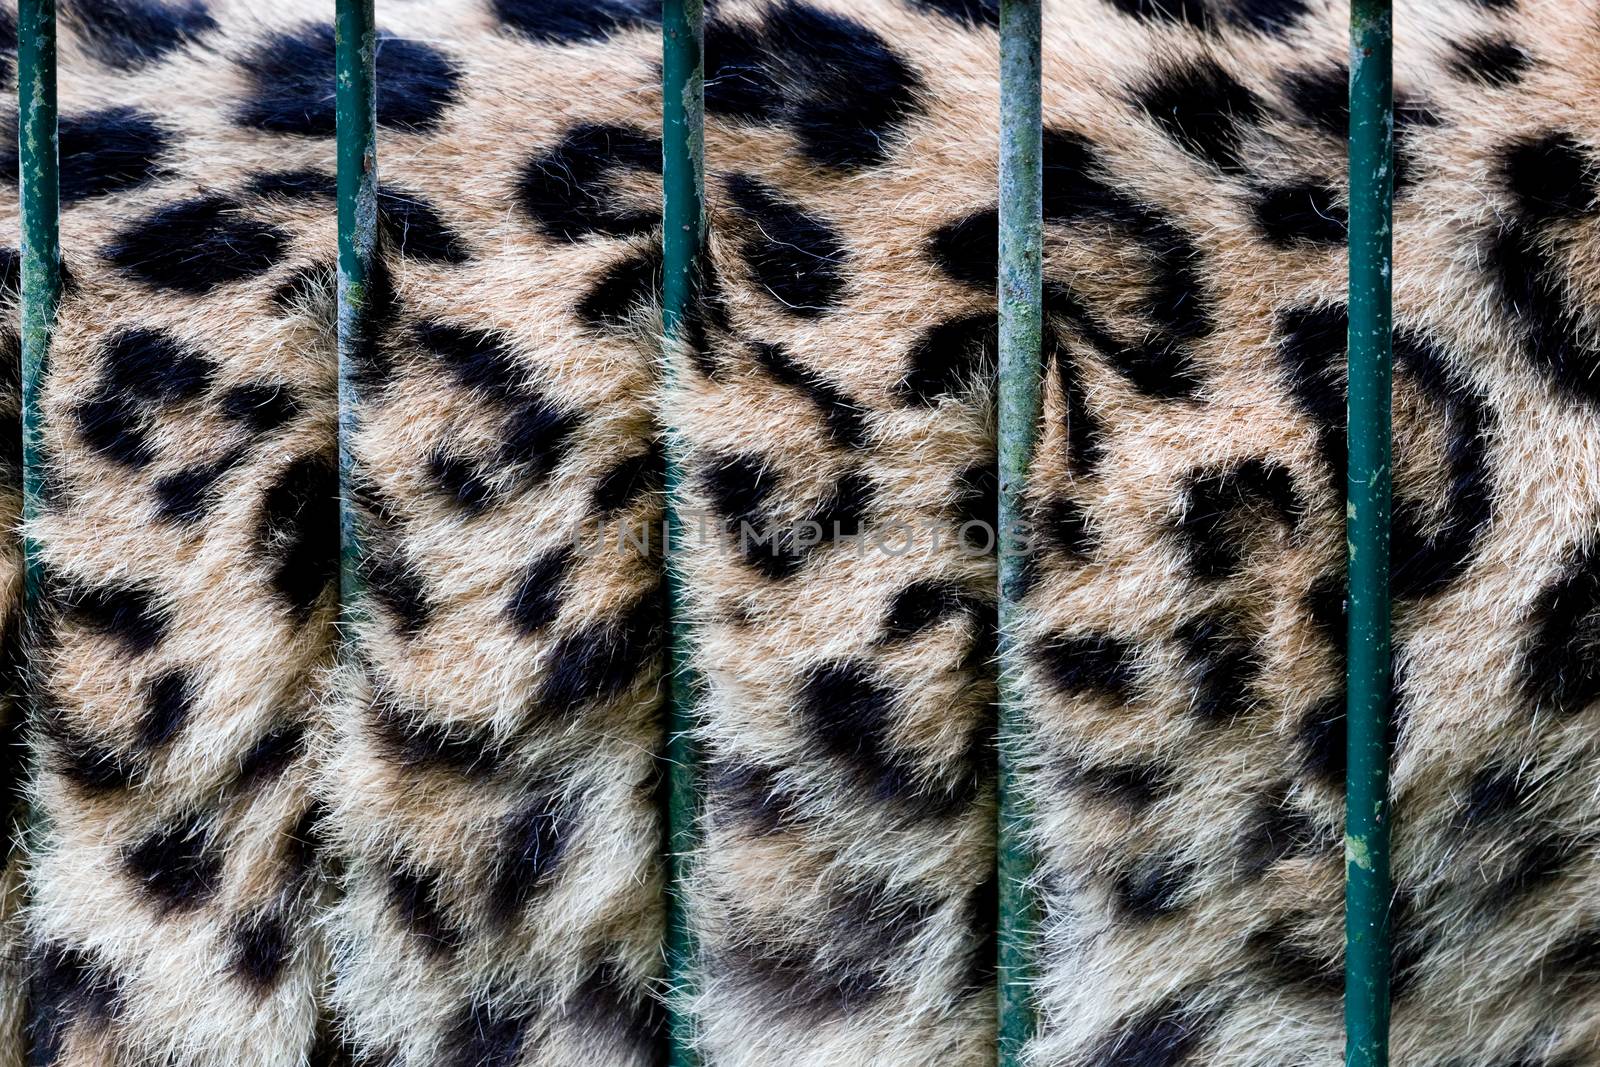 A big cat in cage, its fur behind zoo bars, captivity. Conceptual